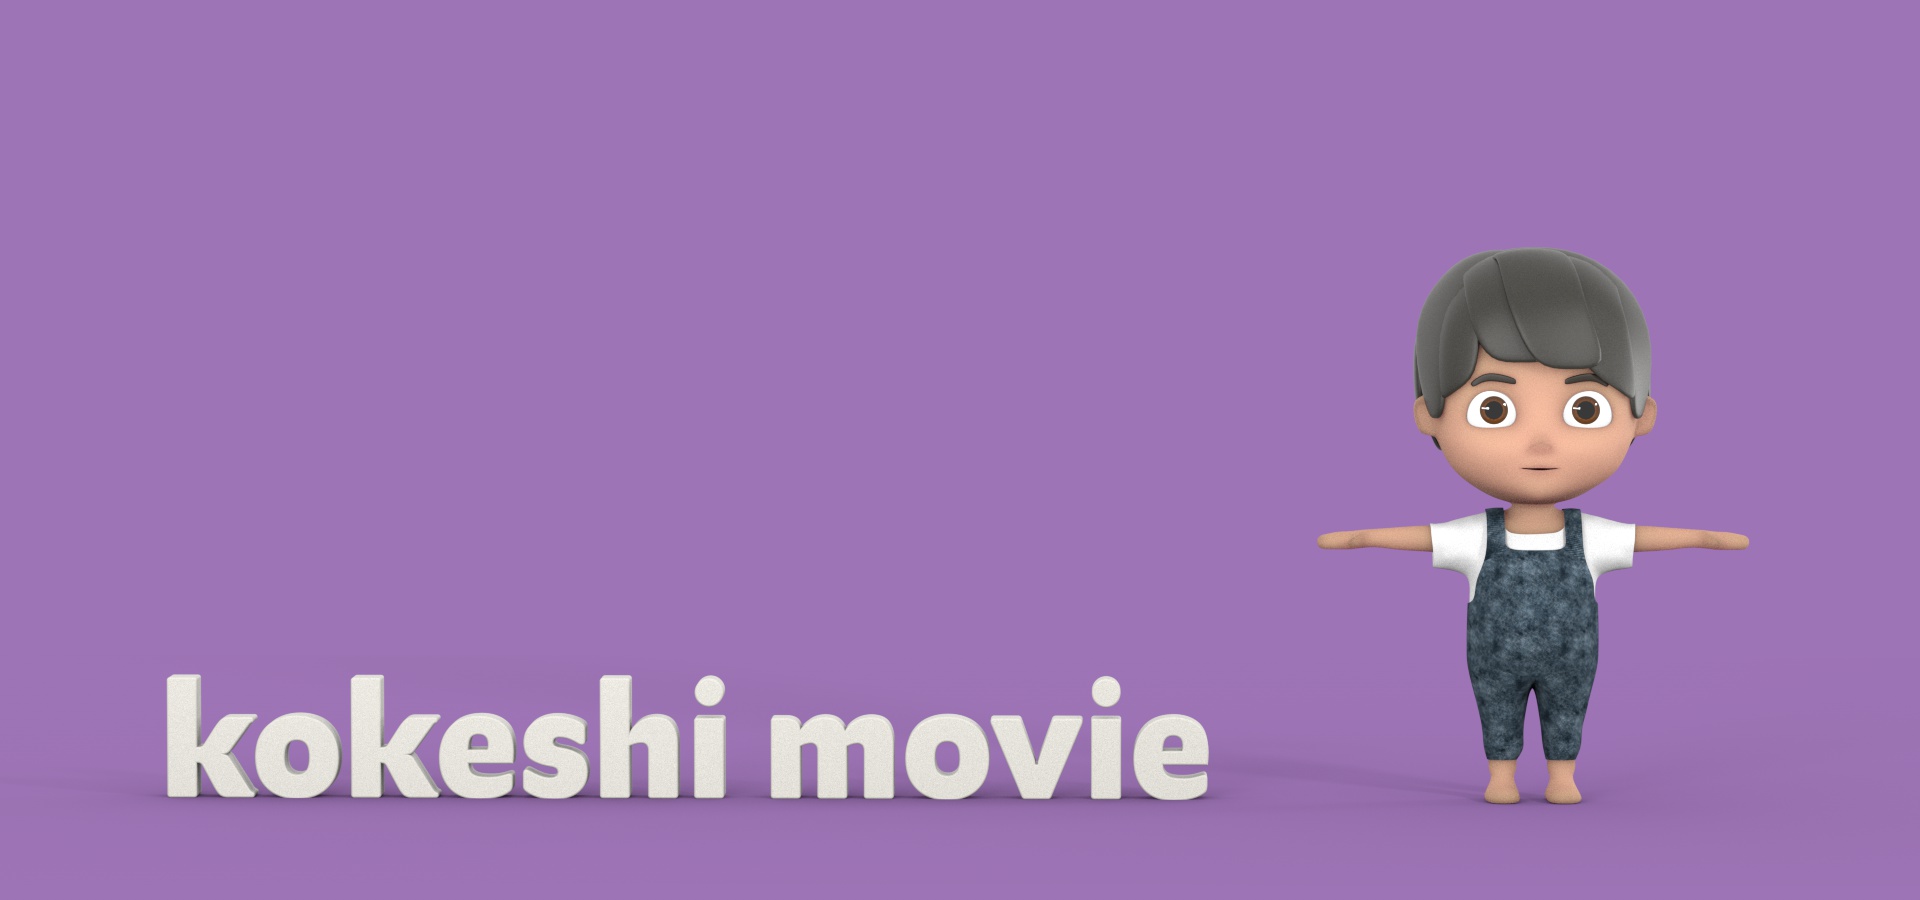 kokeshi movie